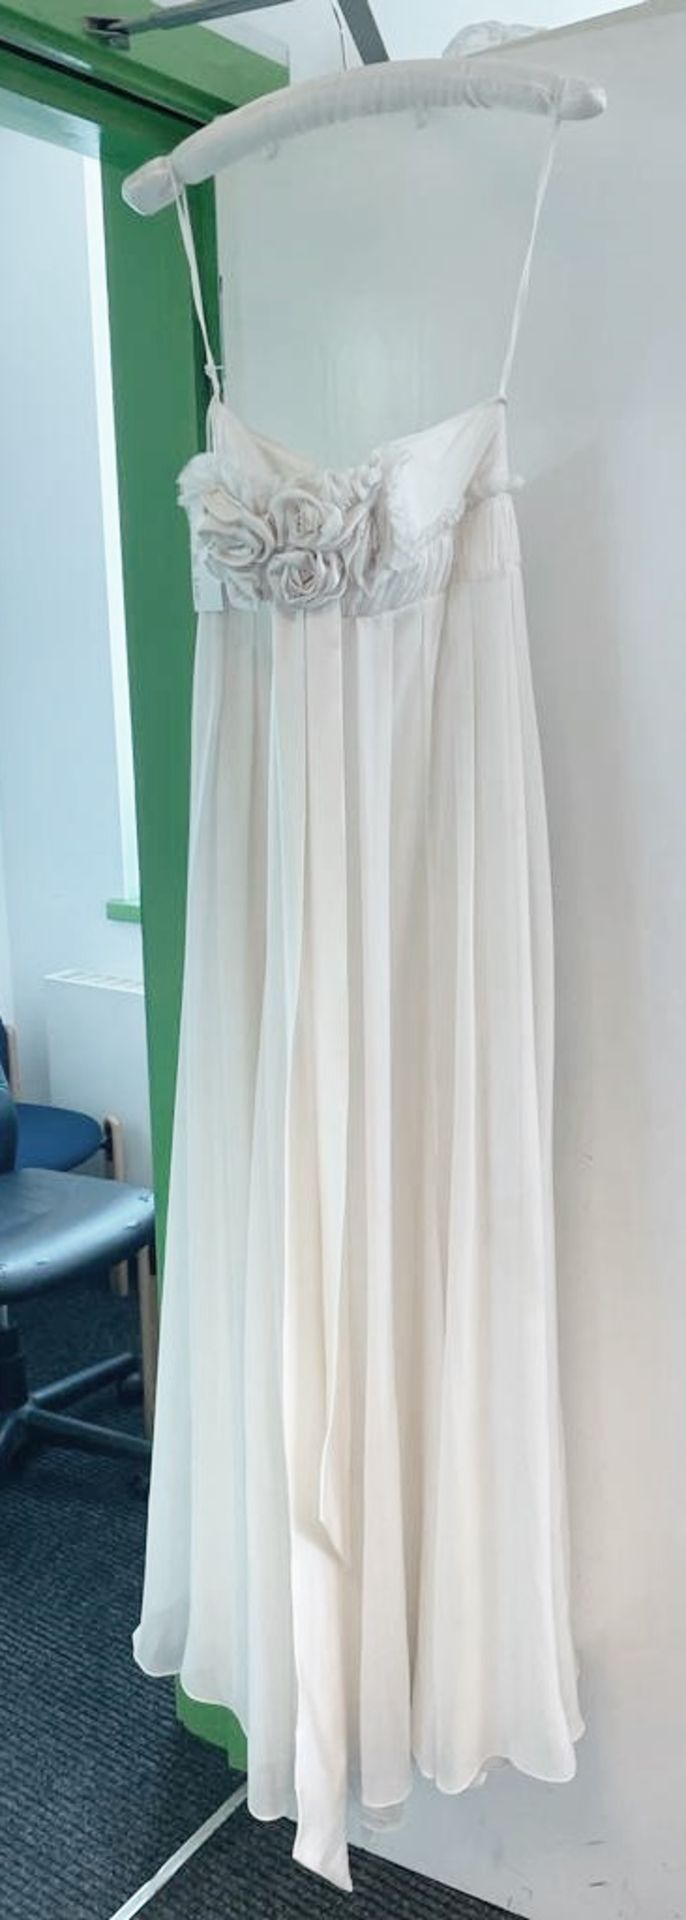 1 x DAVID FIELDEN Designer Silk Strapless Grecian-style Column Wedding Dress Bridal Gown, With